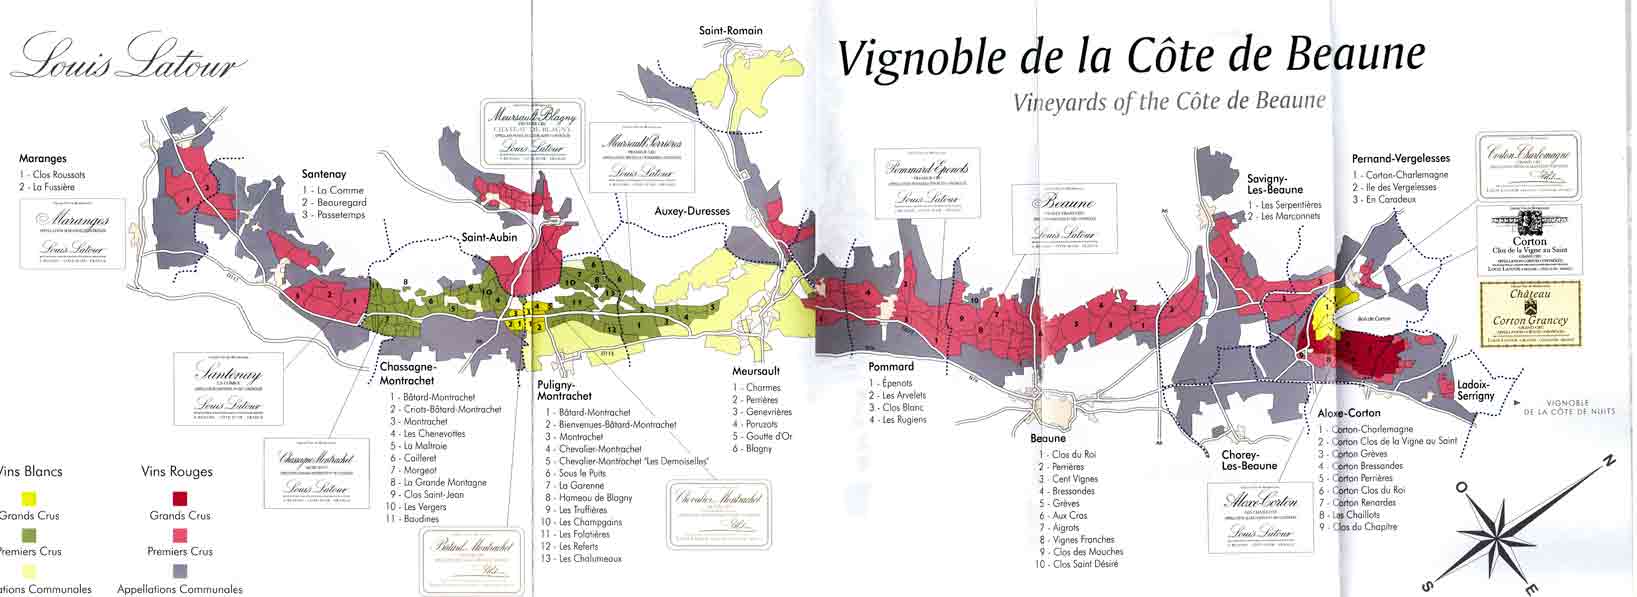 Cote-de-Baunne Map